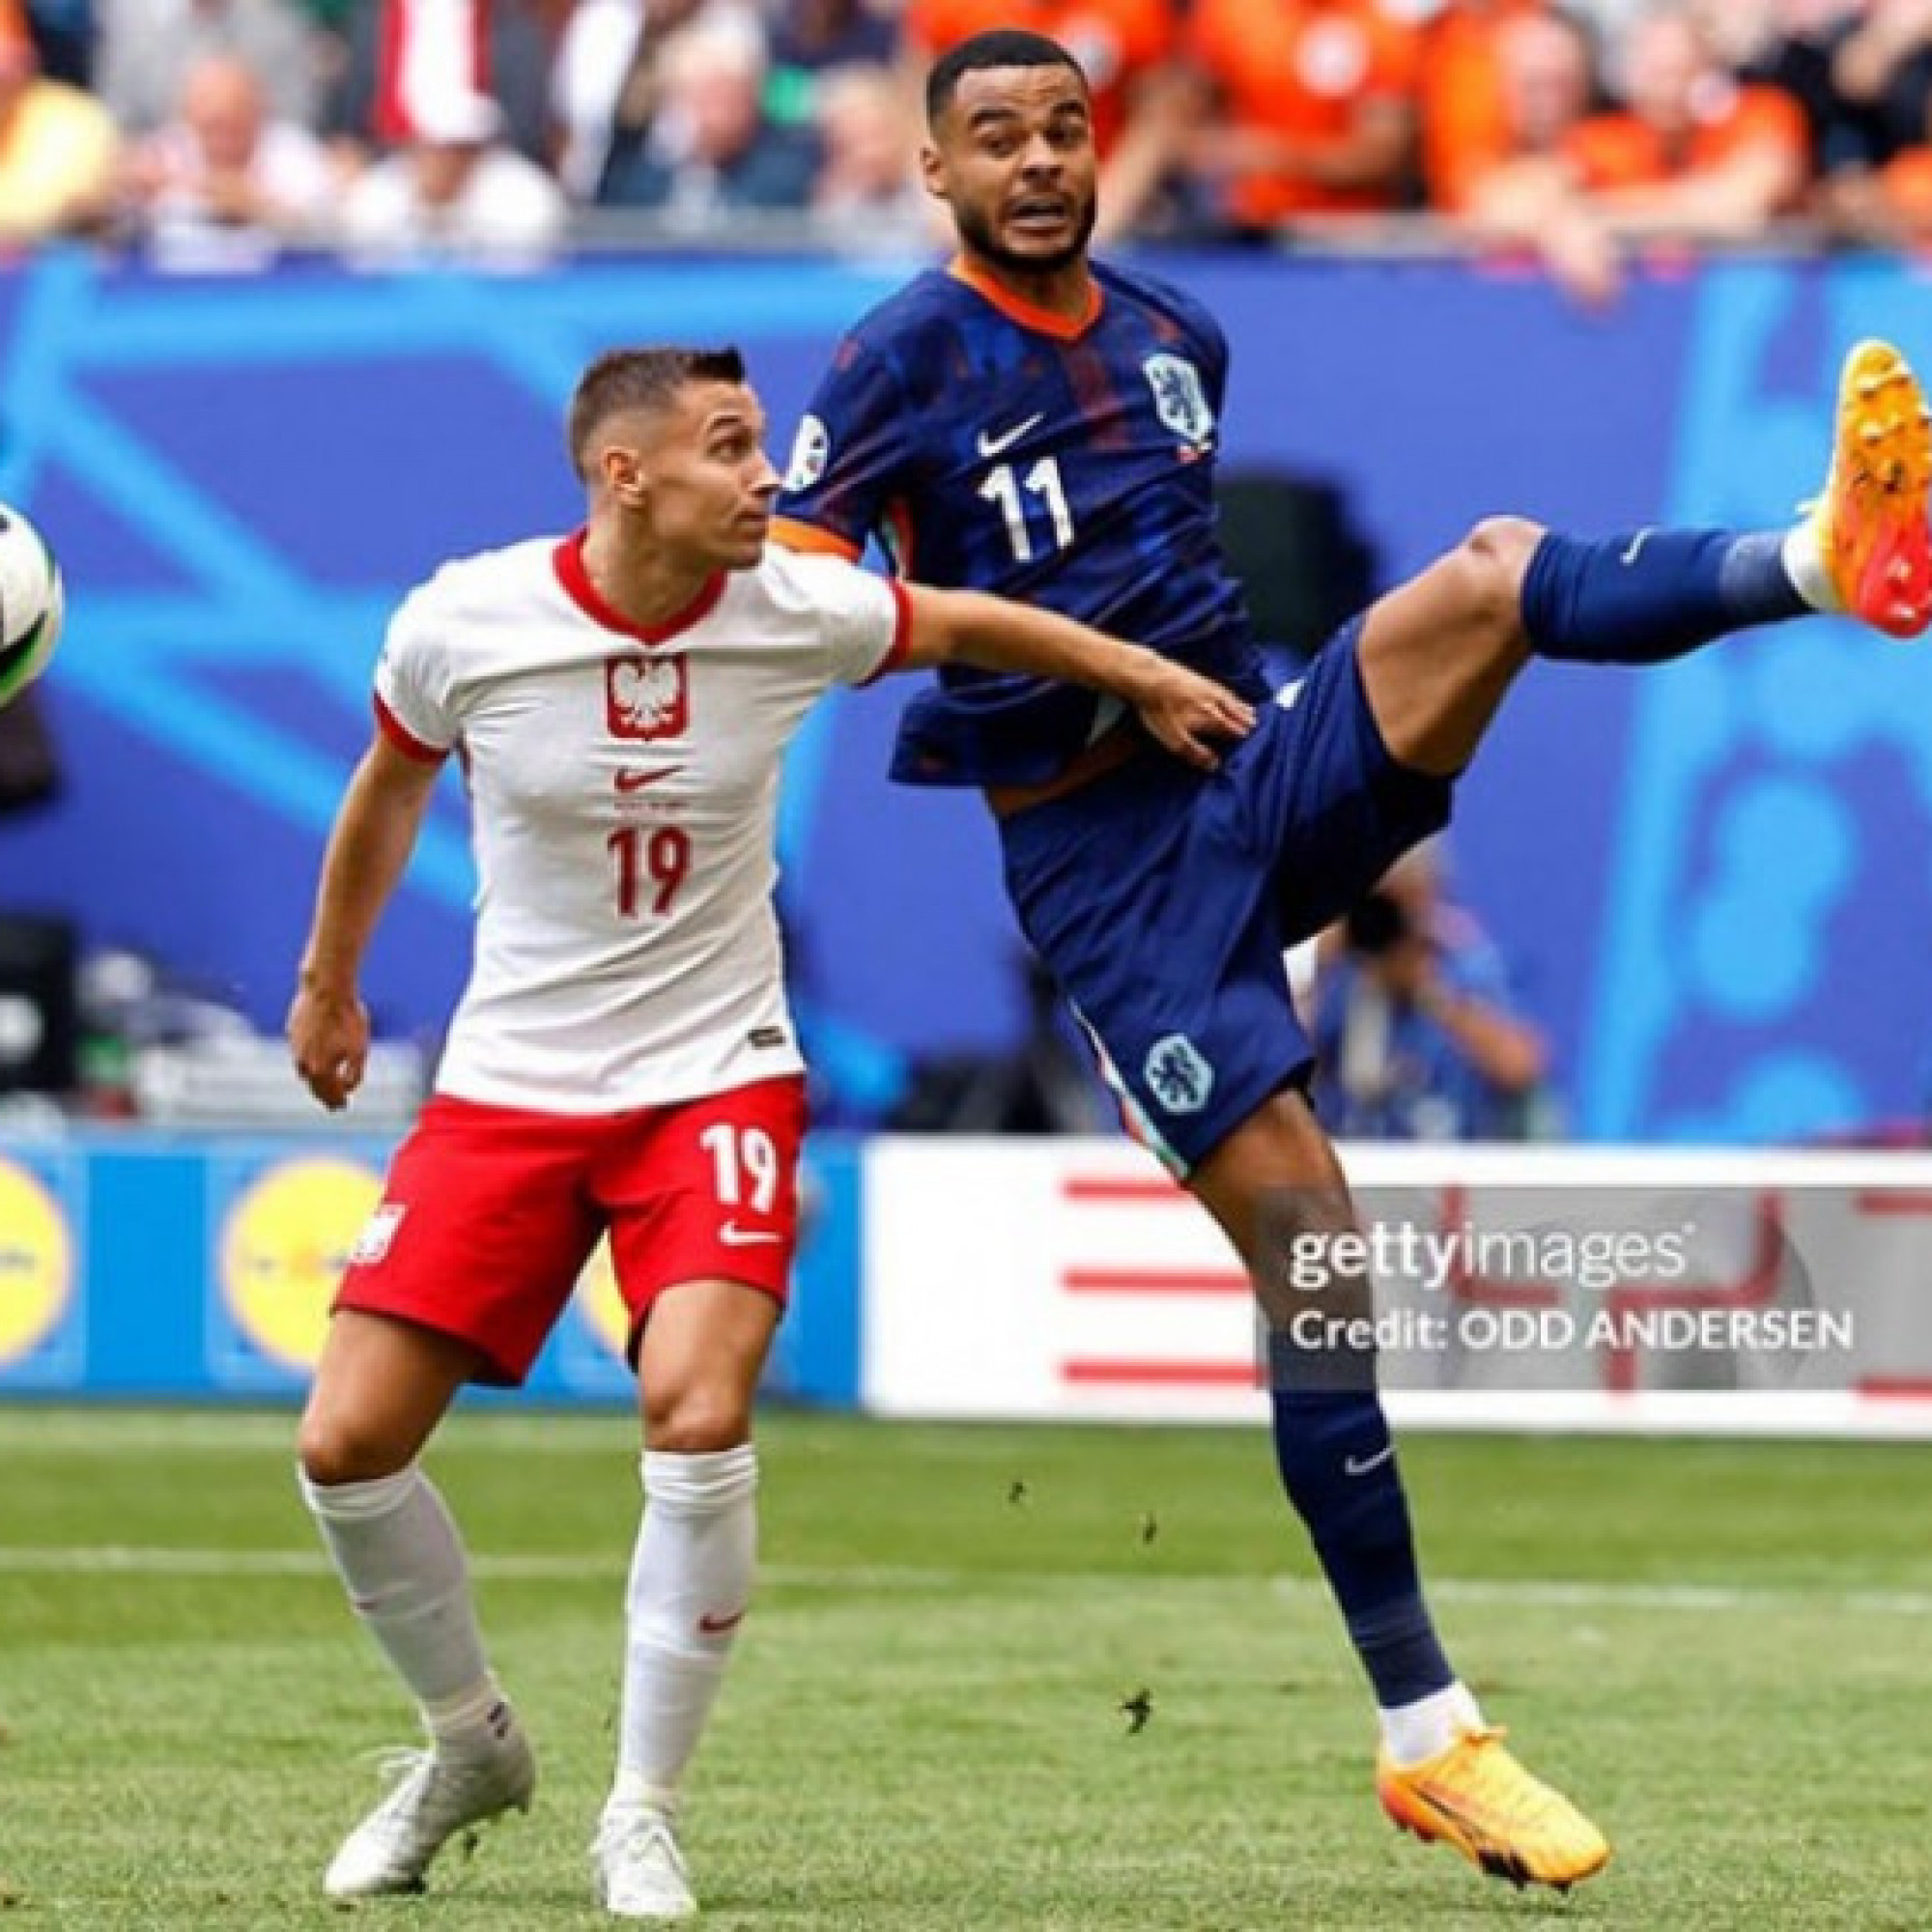  - Trực tiếp bóng đá Ba Lan - Hà Lan: Xuất sắc bảo vệ thành quả (EURO) (Hết giờ)